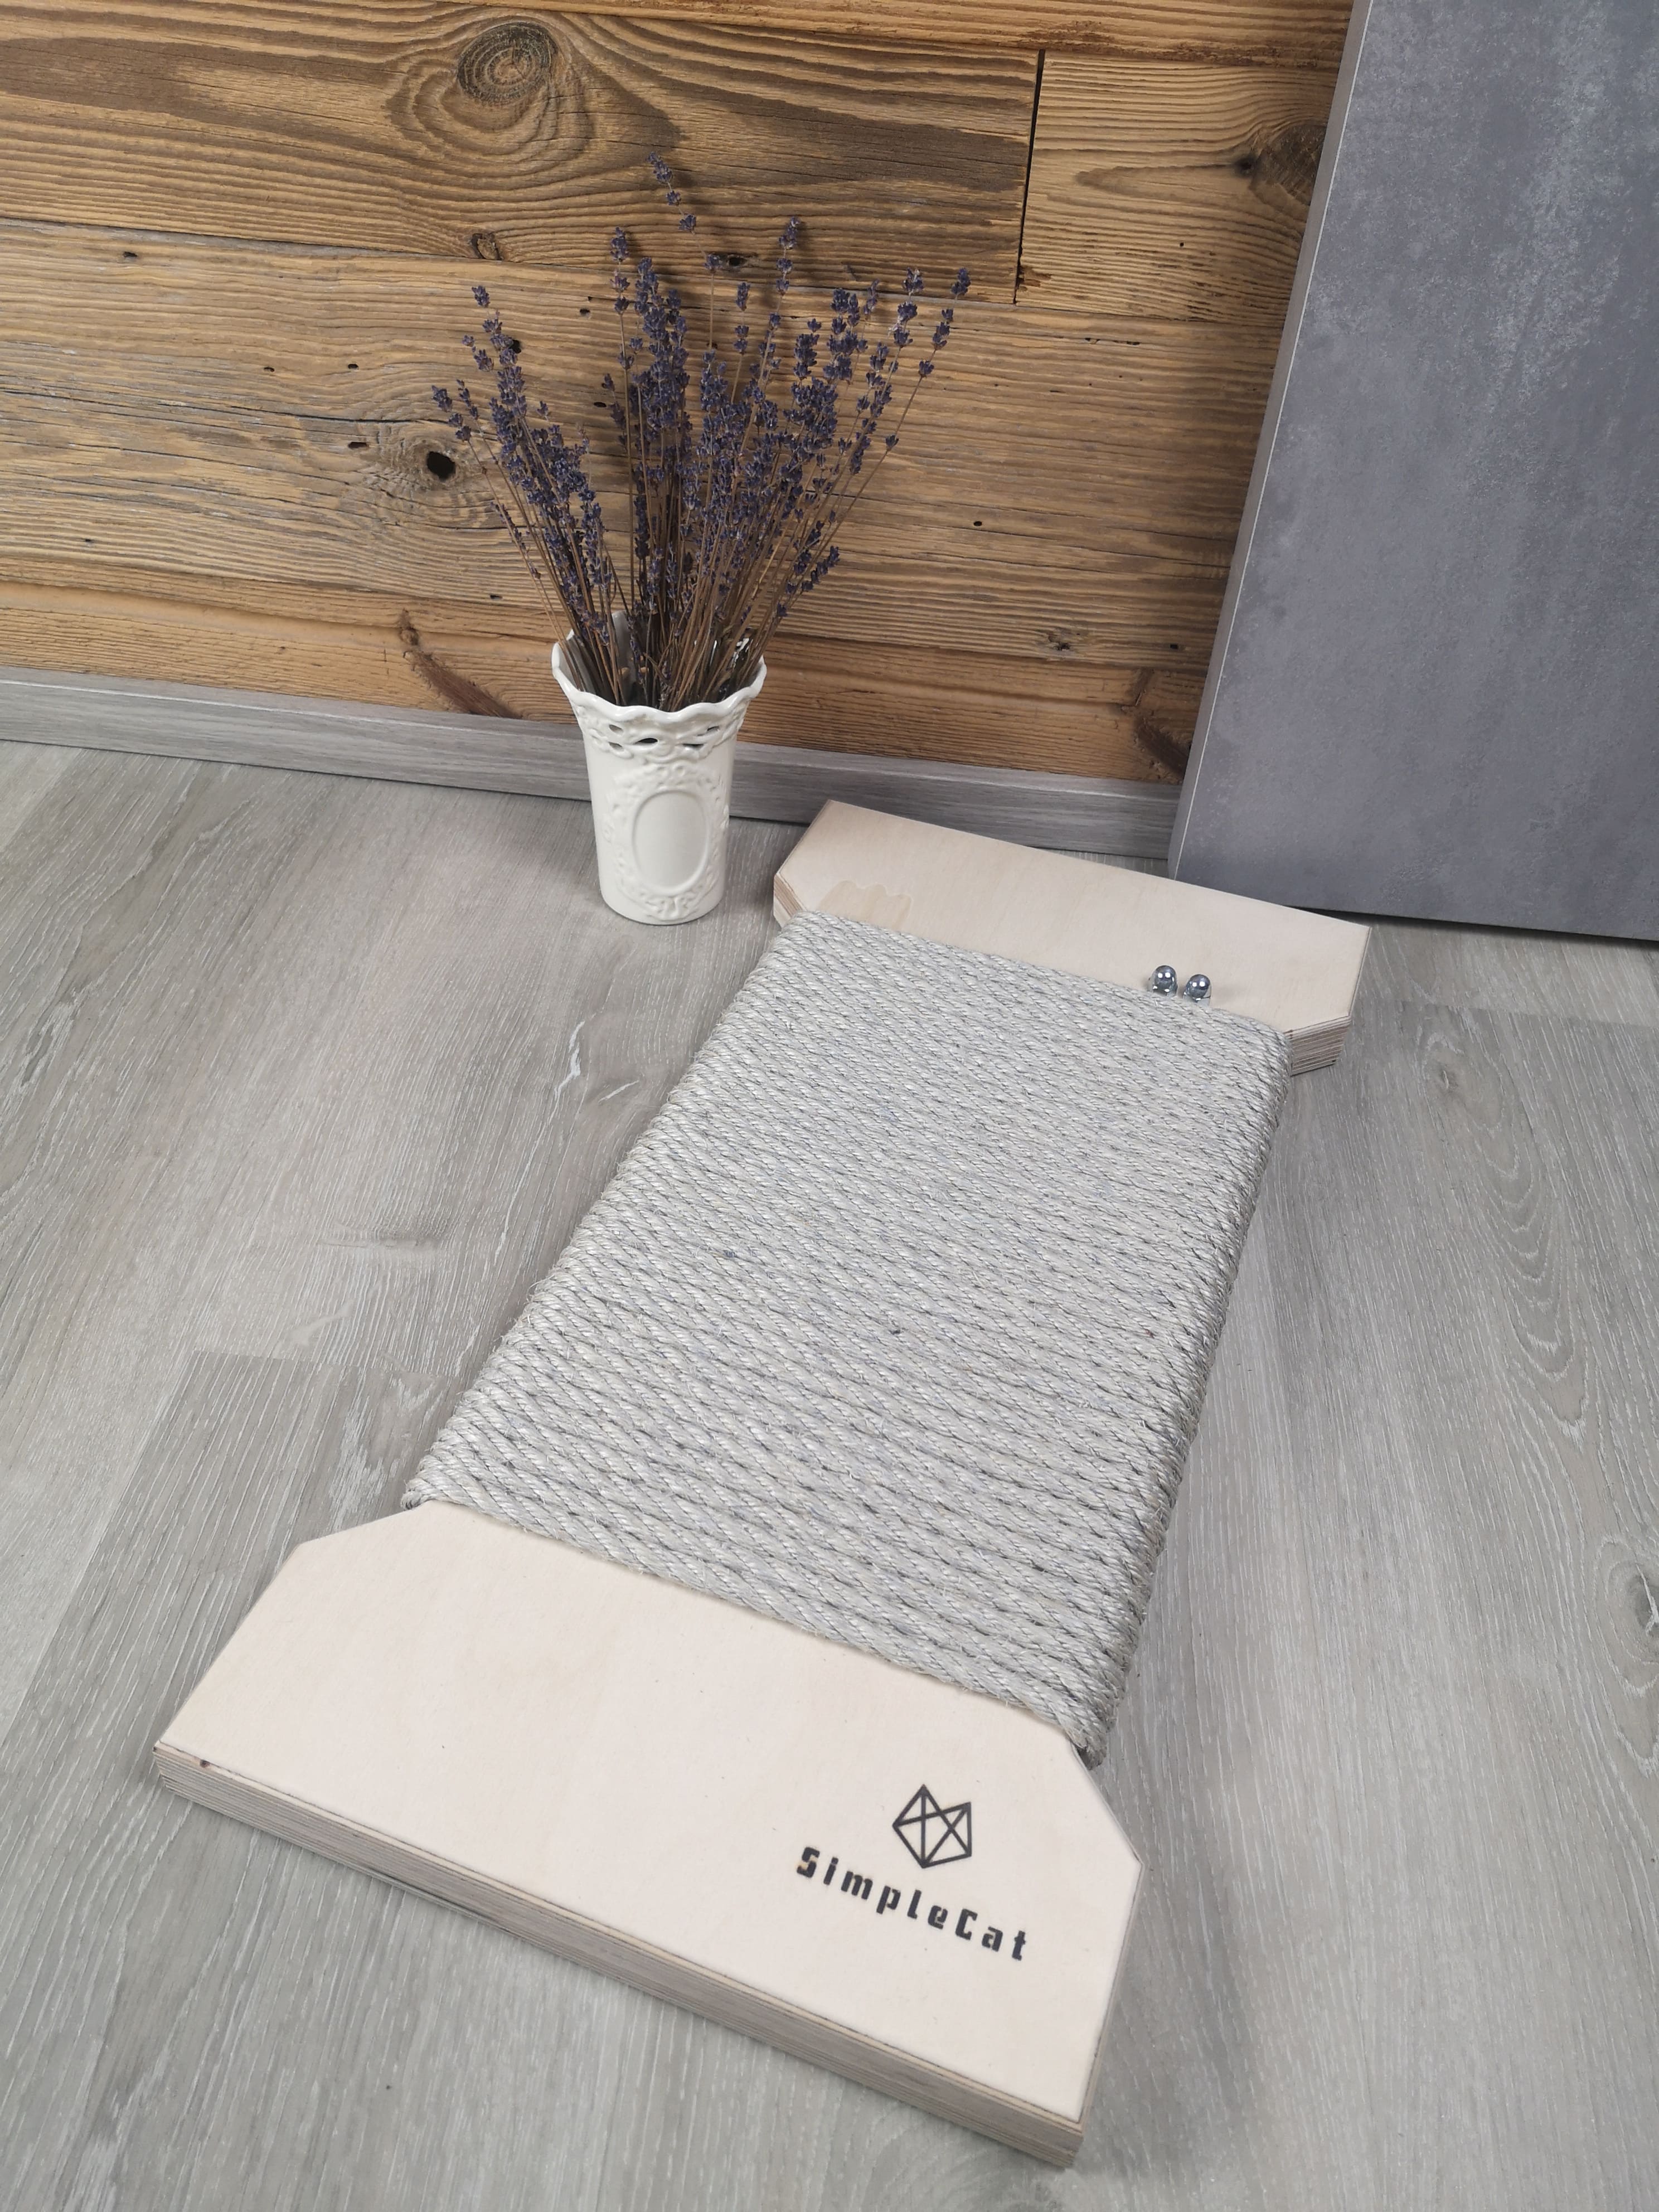 Modernes Kratzbrett aus Holz und mit grauen Sisal umwickelt | SimpleCat |Kratzbrett Amy grau